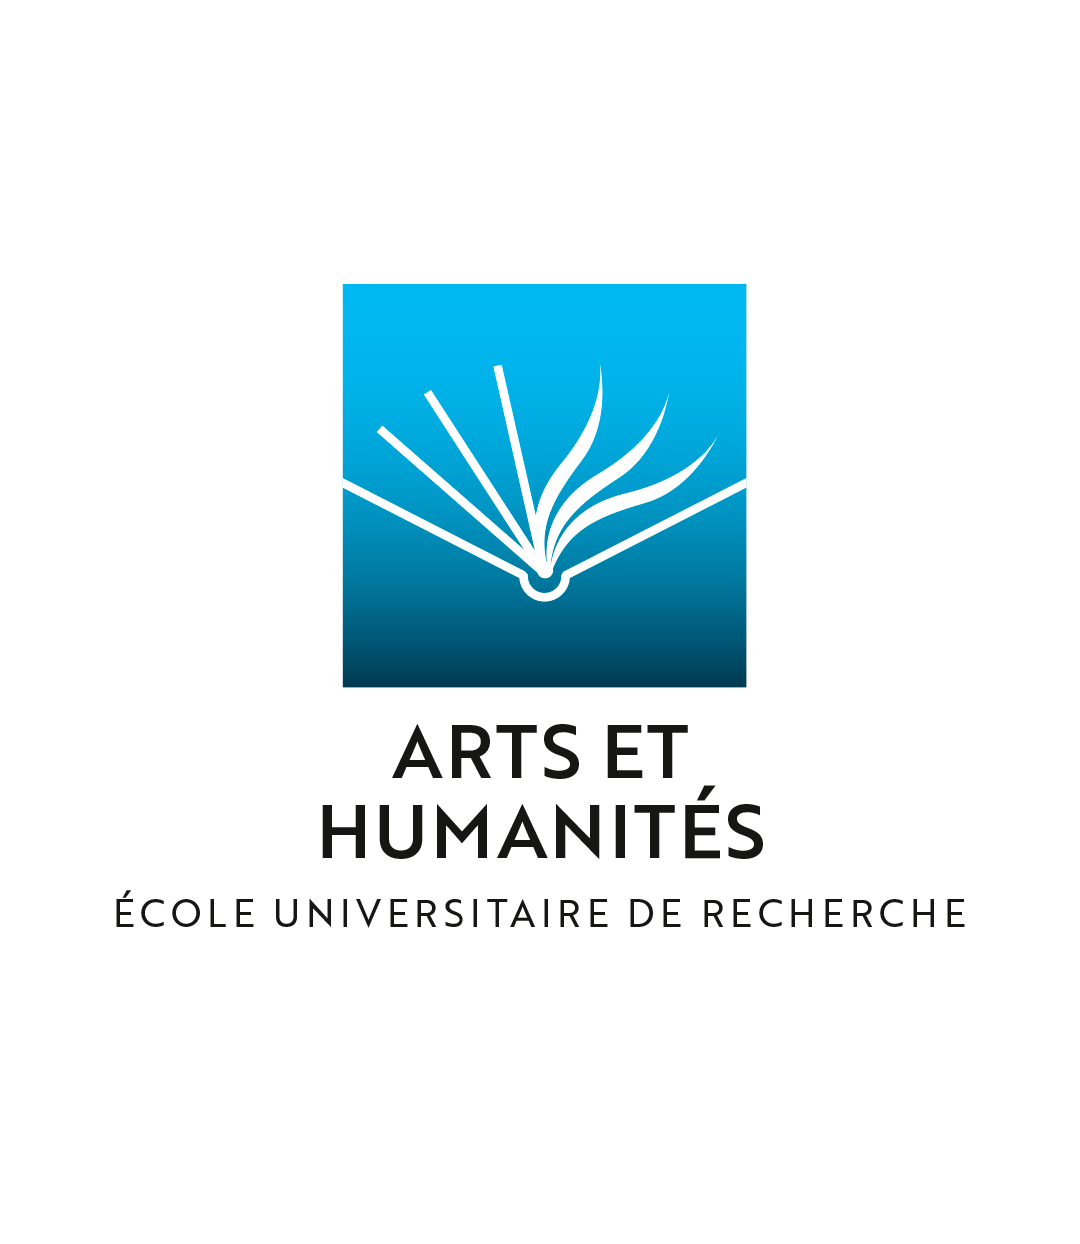 L'ECOLE UNIVERSITAIRE DE RECHERCHE CREATES - ARTS ET HUMANITÉS